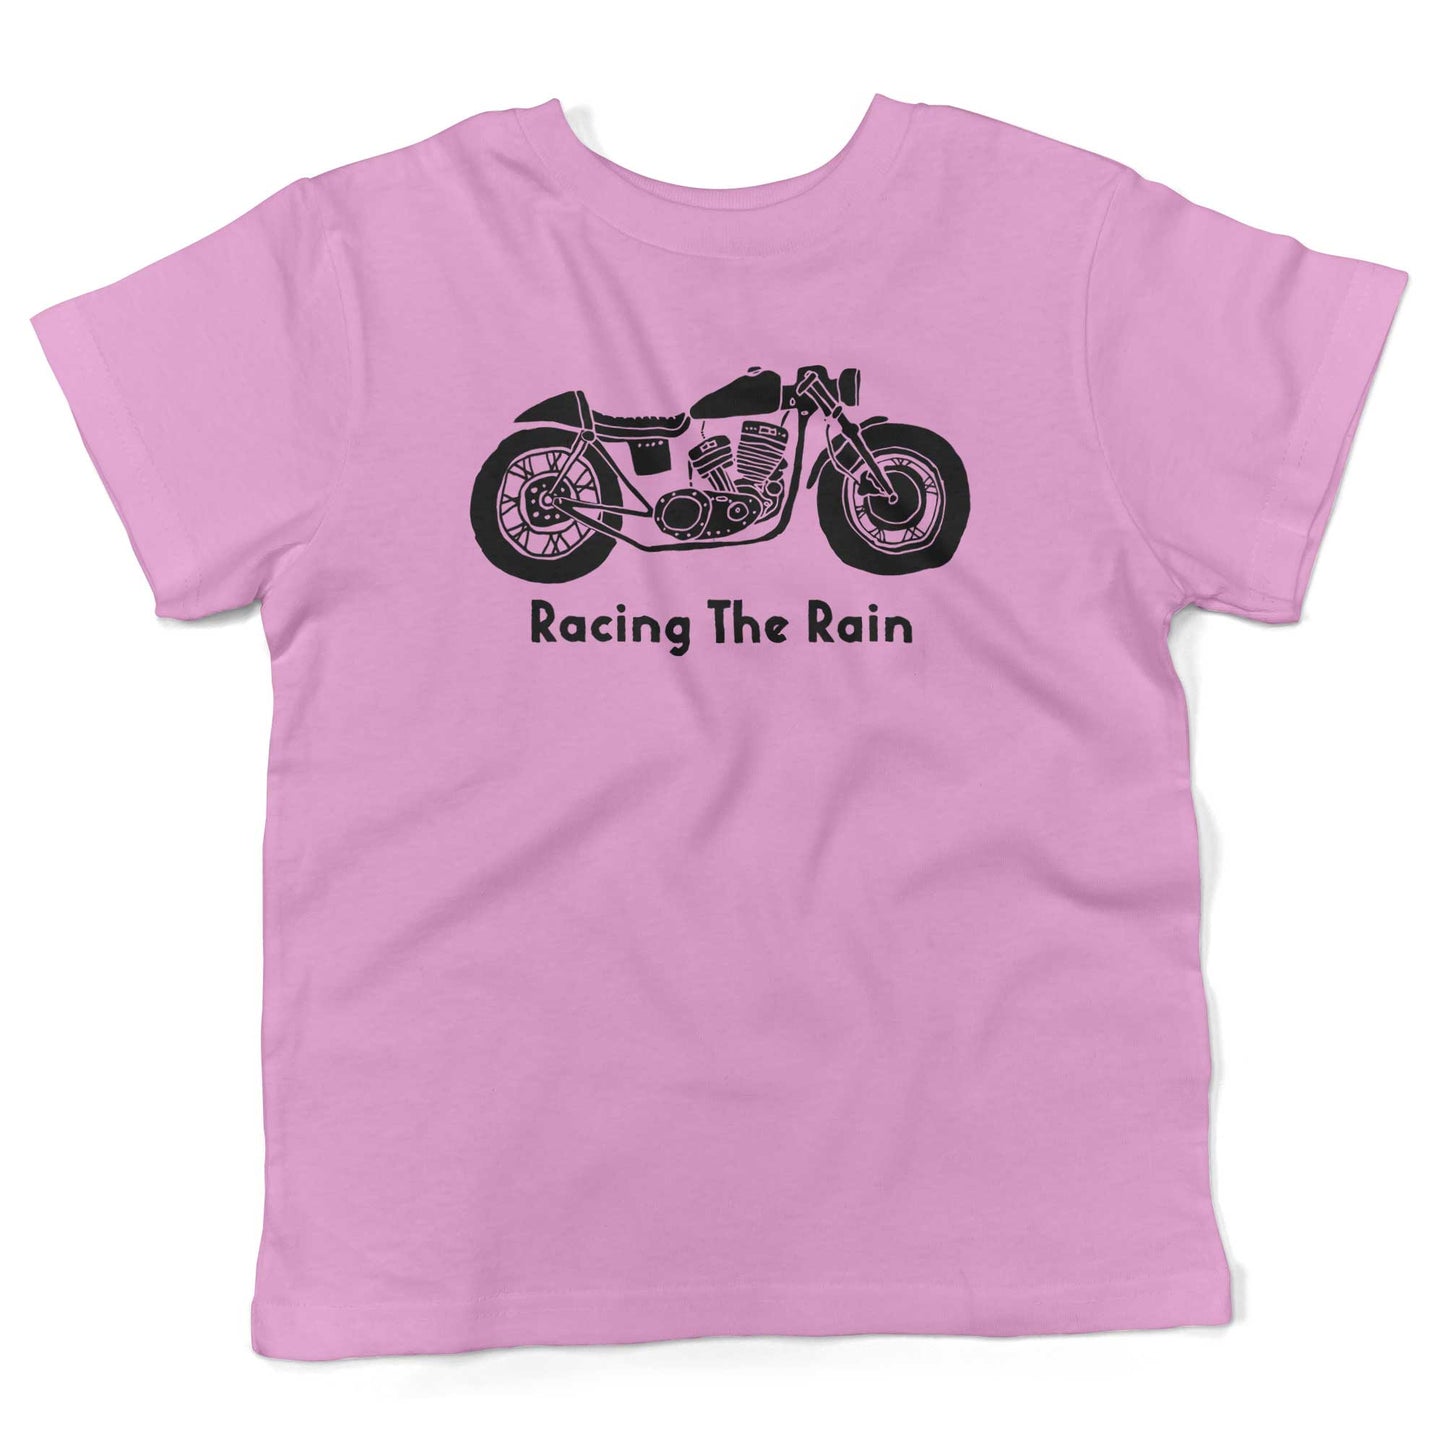 Racing The Rain Toddler Shirt-Organic Pink-2T